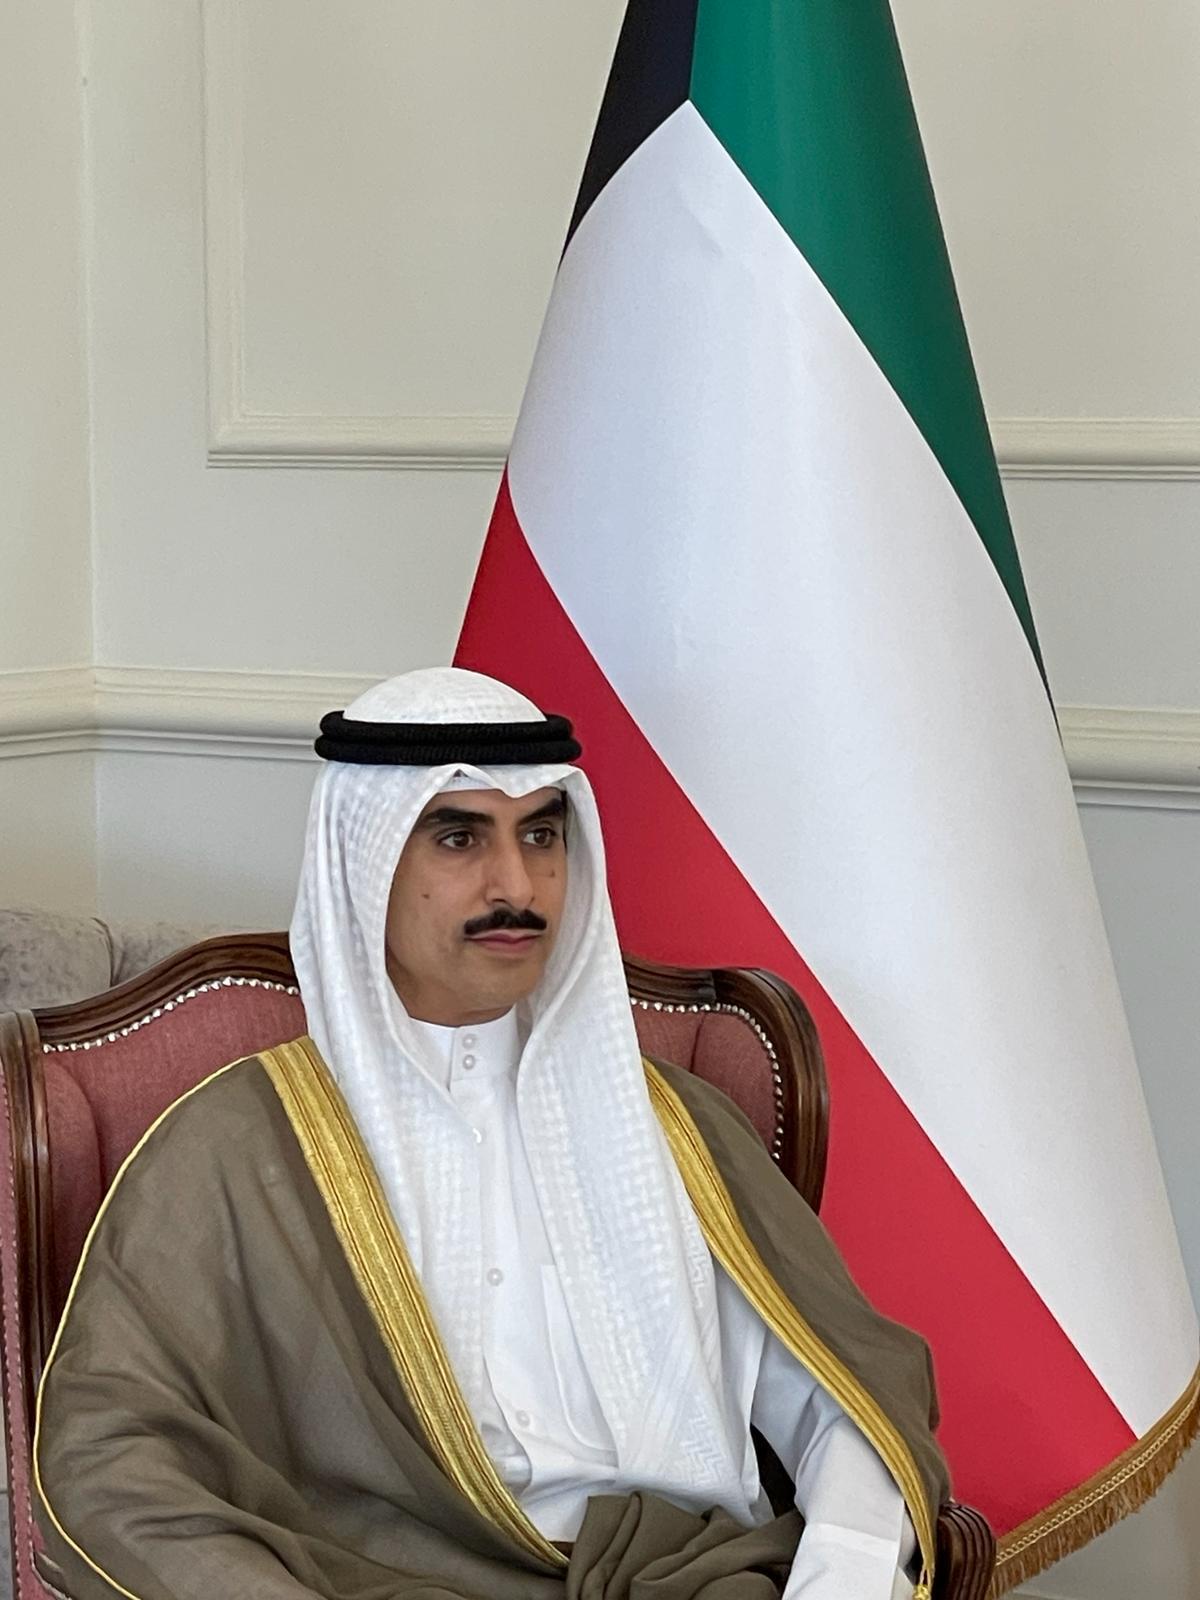 Kuwaiti Ambassador to the Kingdom of Bahrain, Sheikh Thamer Jaber Al-Ahmad Al-Sabah